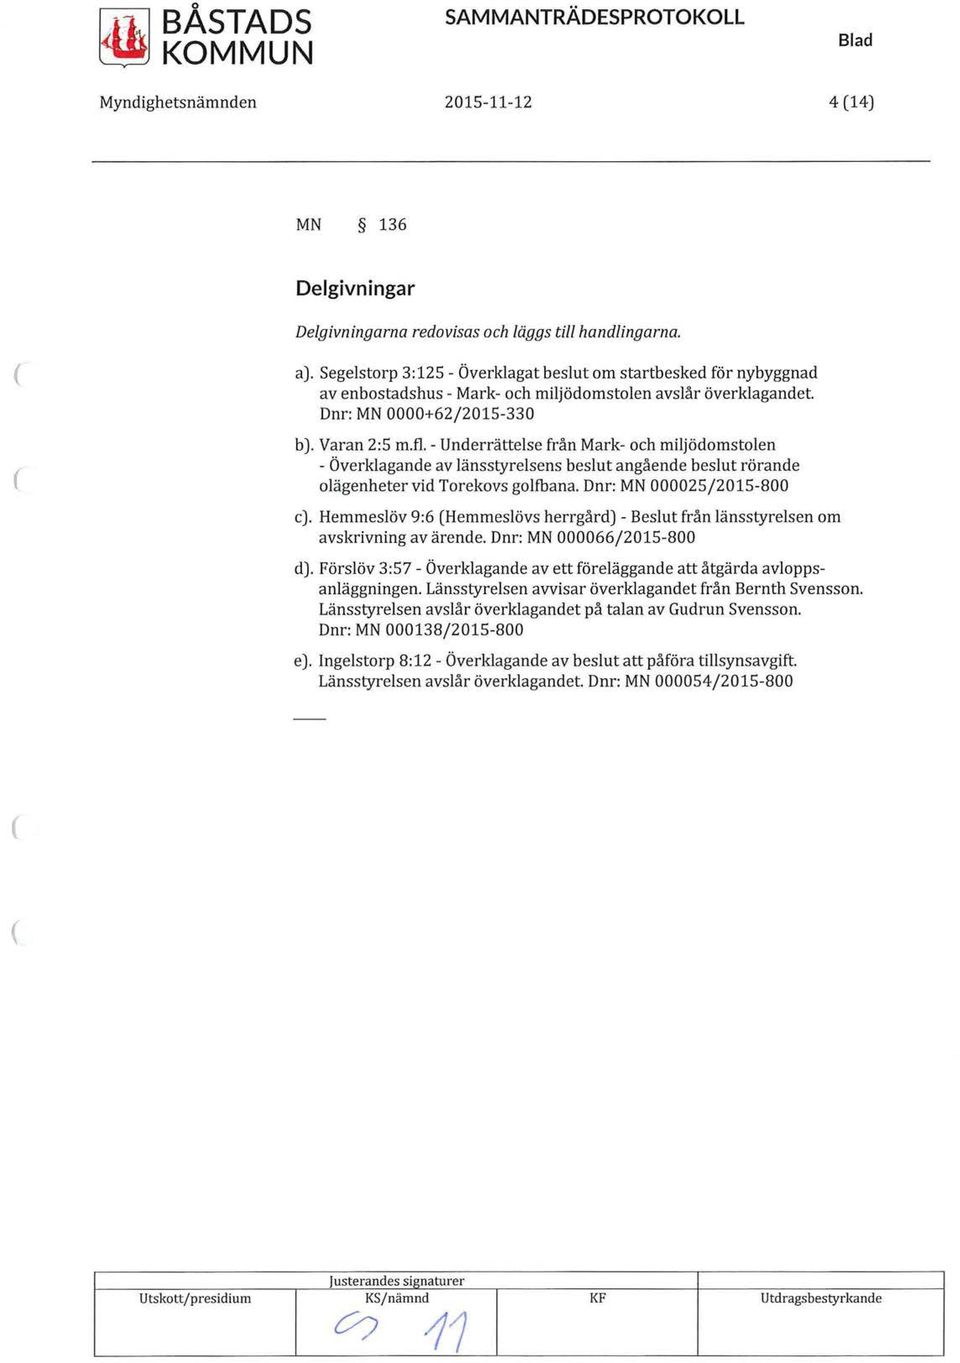 fl - Underrättelse från Mark- och miljödomstolen - Överklagande av länsstyrelsens beslut angående beslut rörande olägenheter vid Torekovs golfbana. Dnr: MN 000025/2015-800 c).